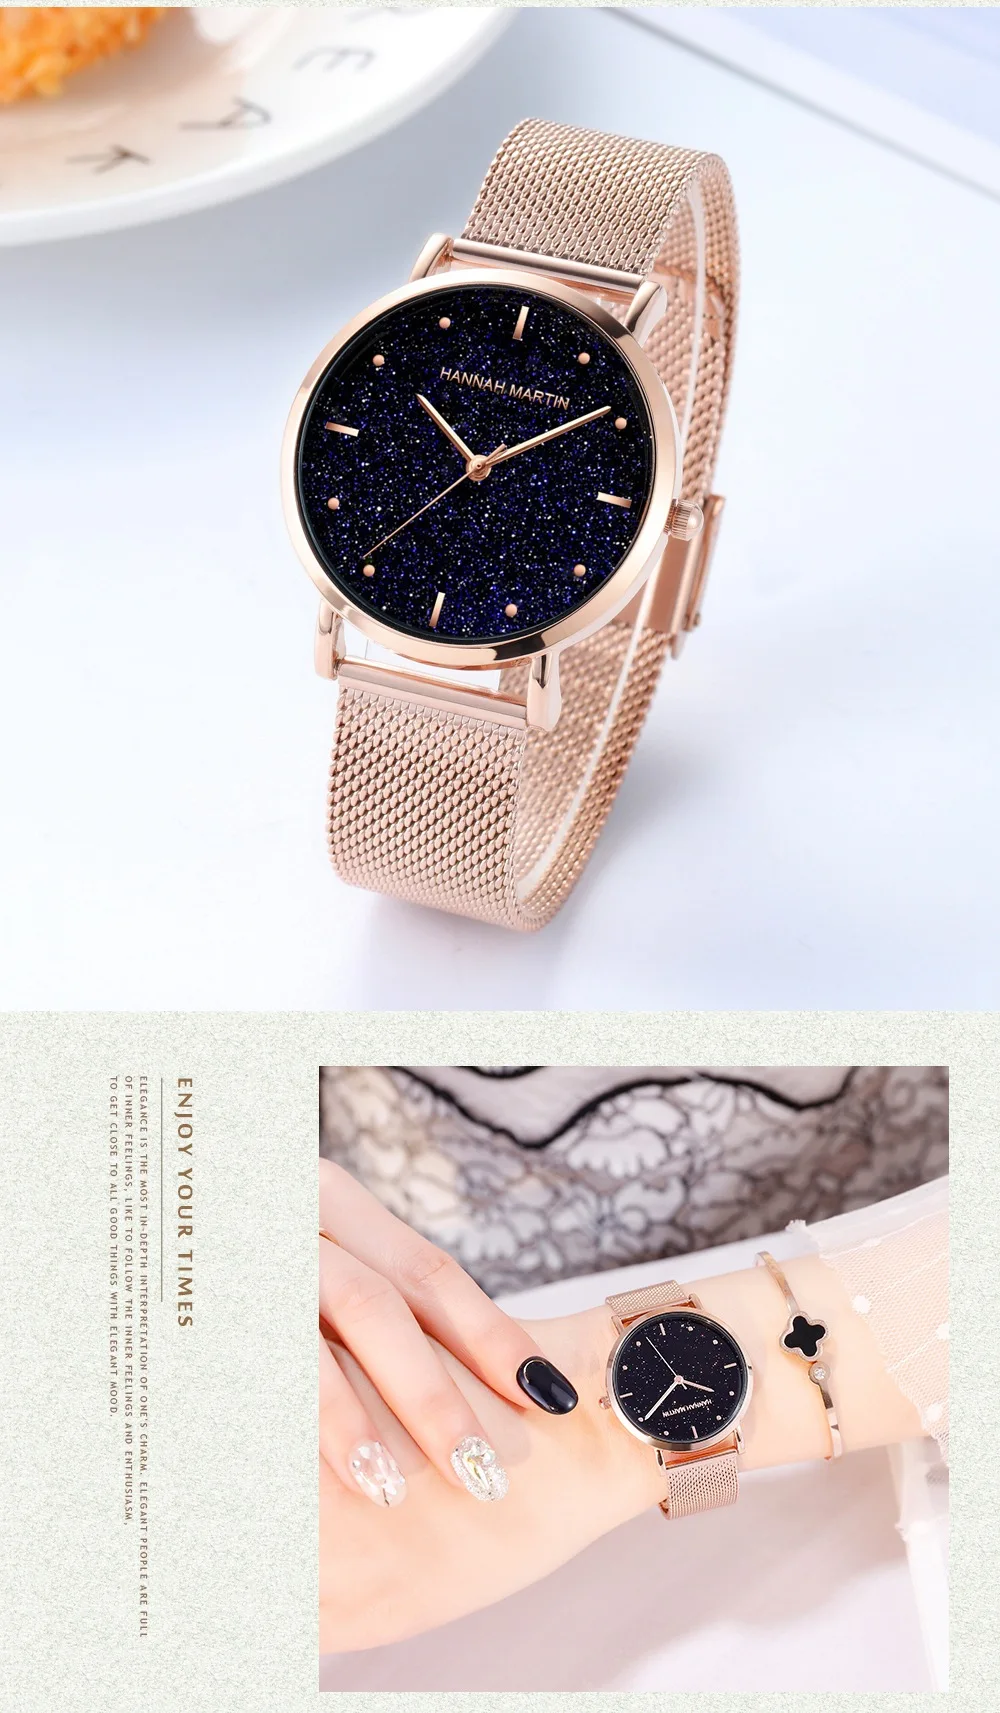 Hannah Martin часы женские кварцевые звездное небо розовое золото нержавеющая сталь дропшиппинг дамы роскошный браслет Relogio Feminino